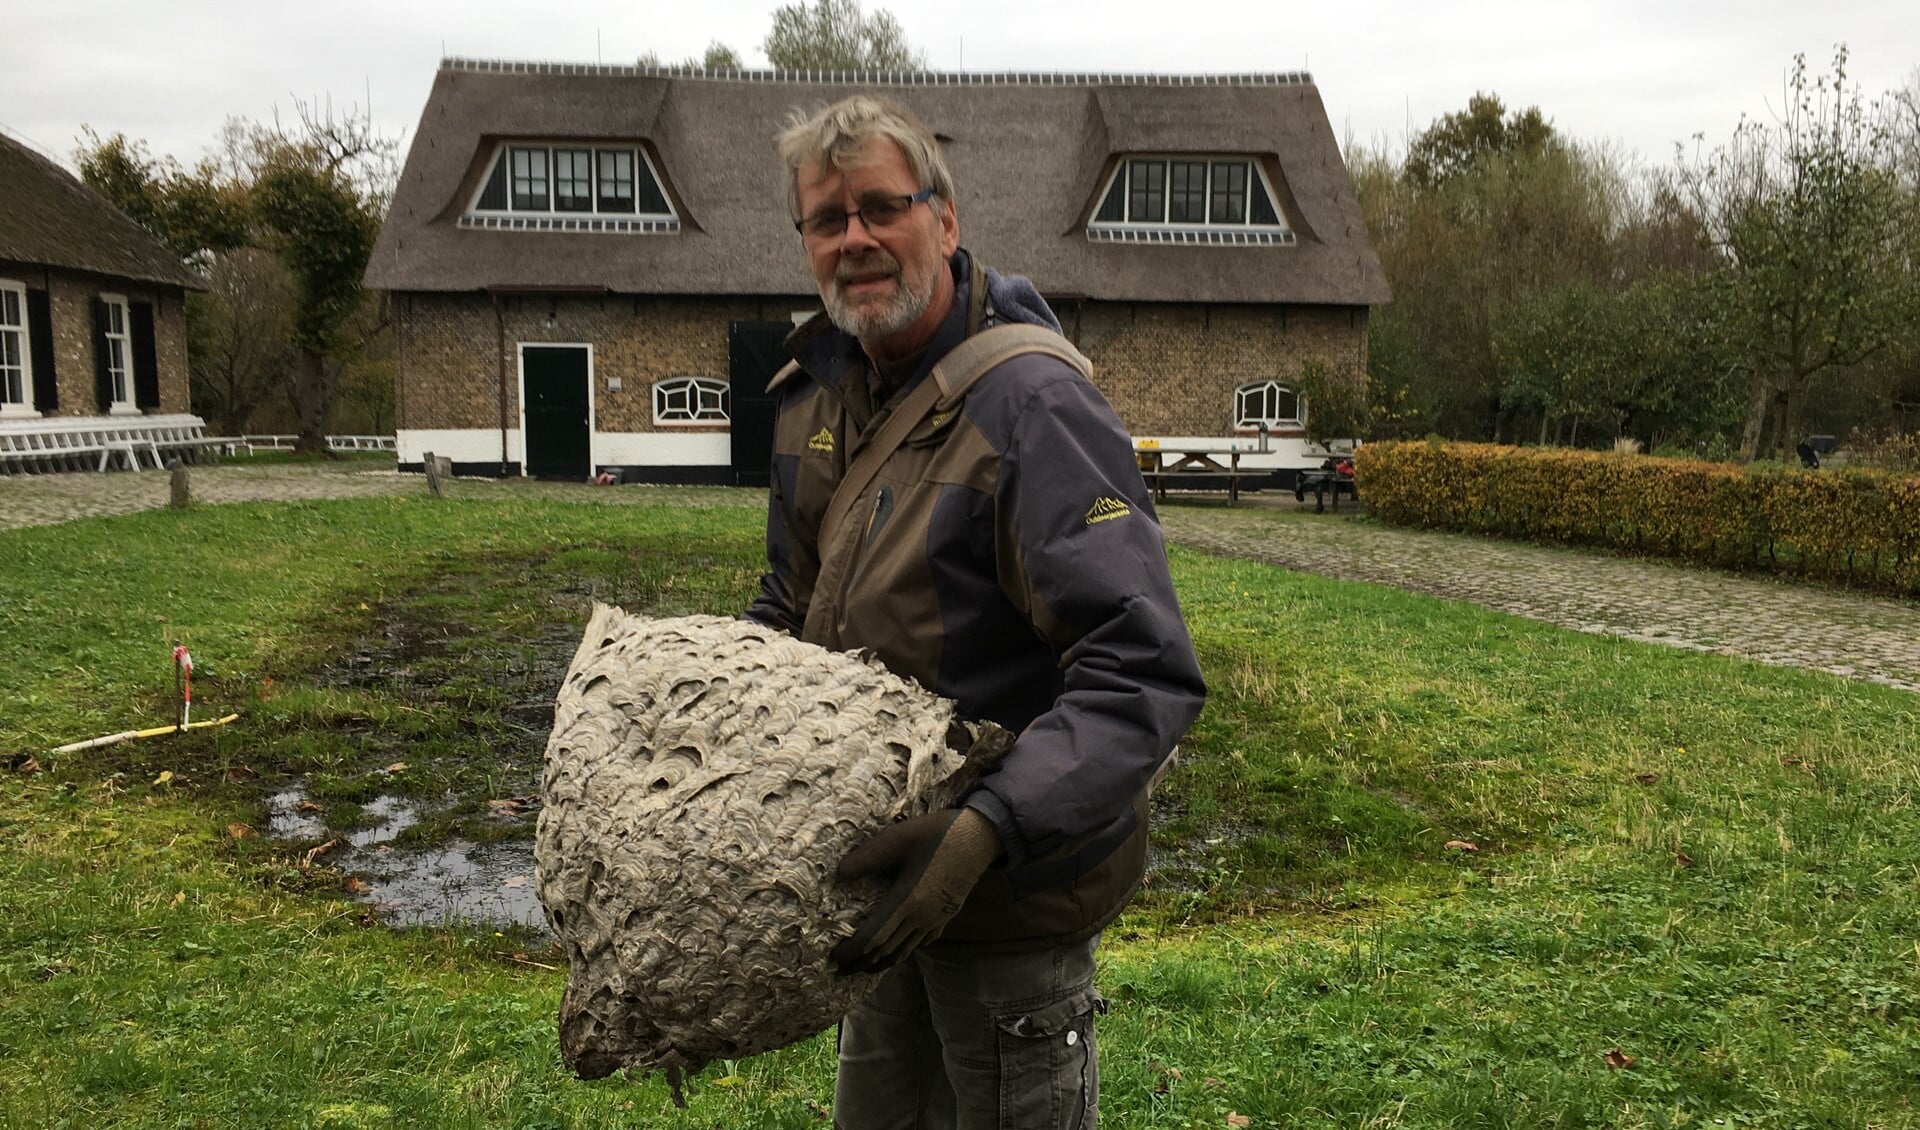 Wespennest in handen van Simon Knot bij Ackerdijkse plassen. (foto: Cees Zwinkels)